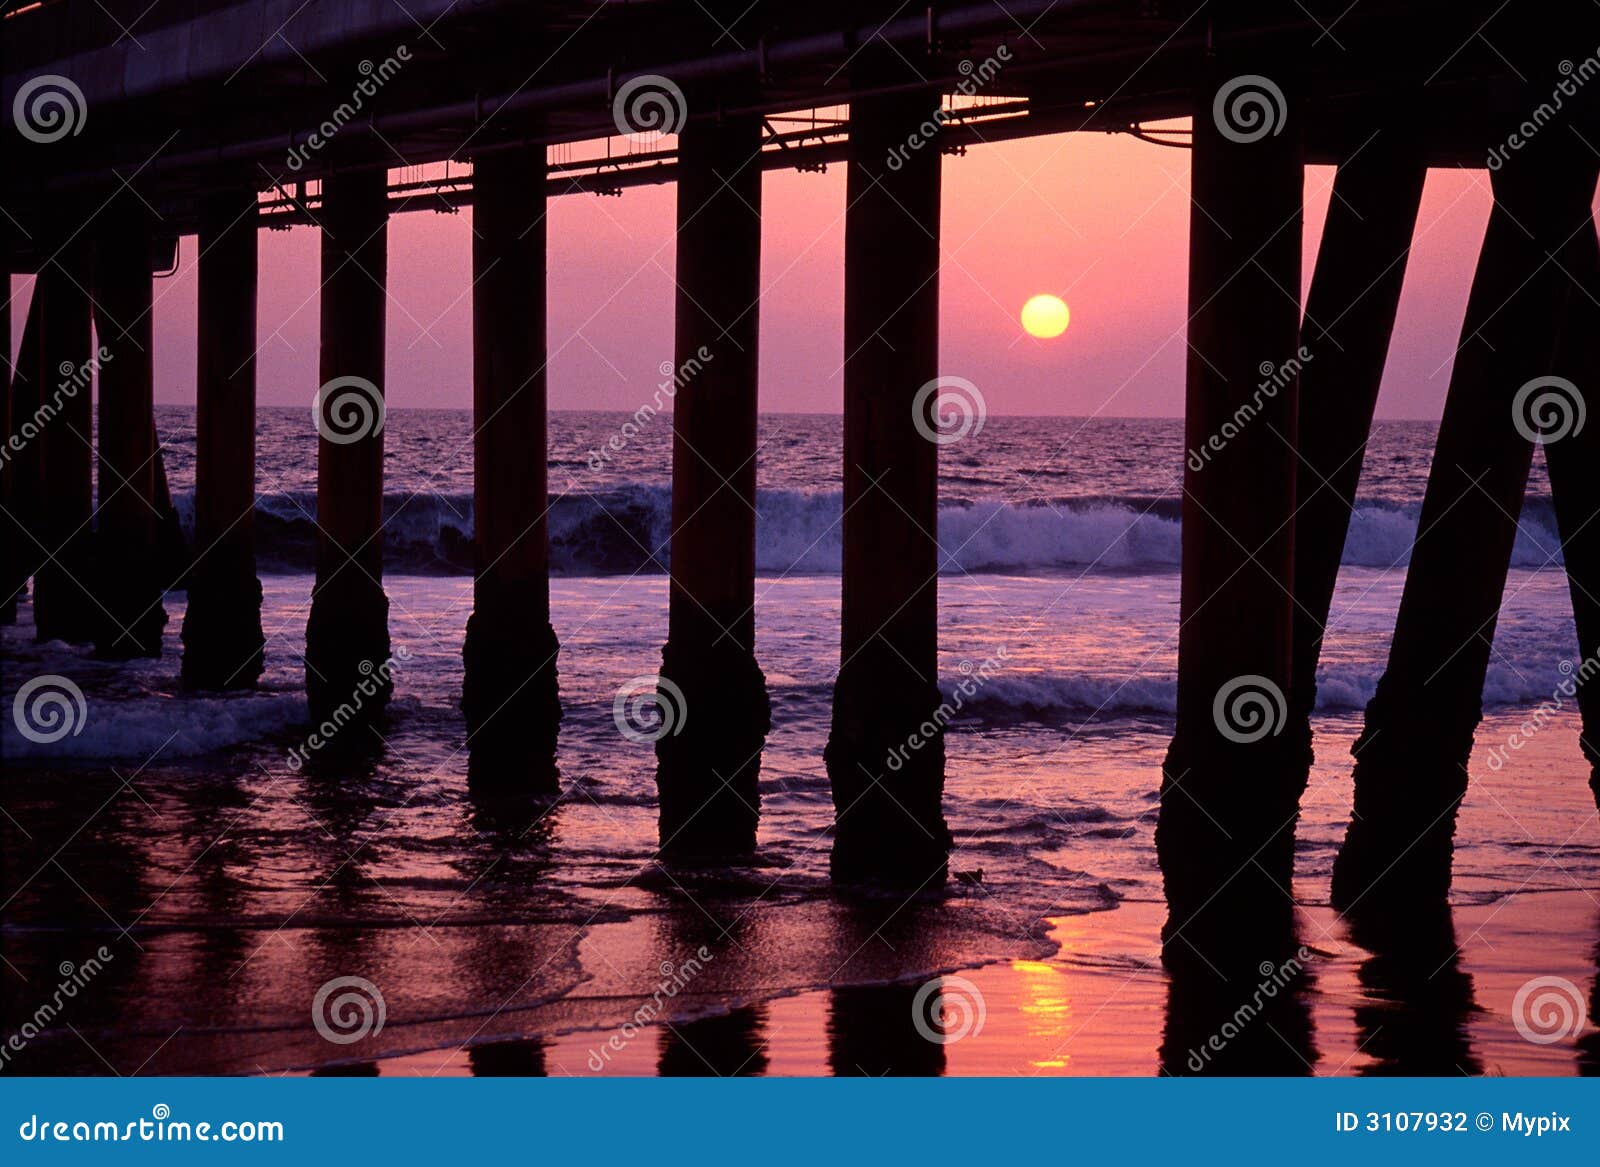 sunset under boardwalk